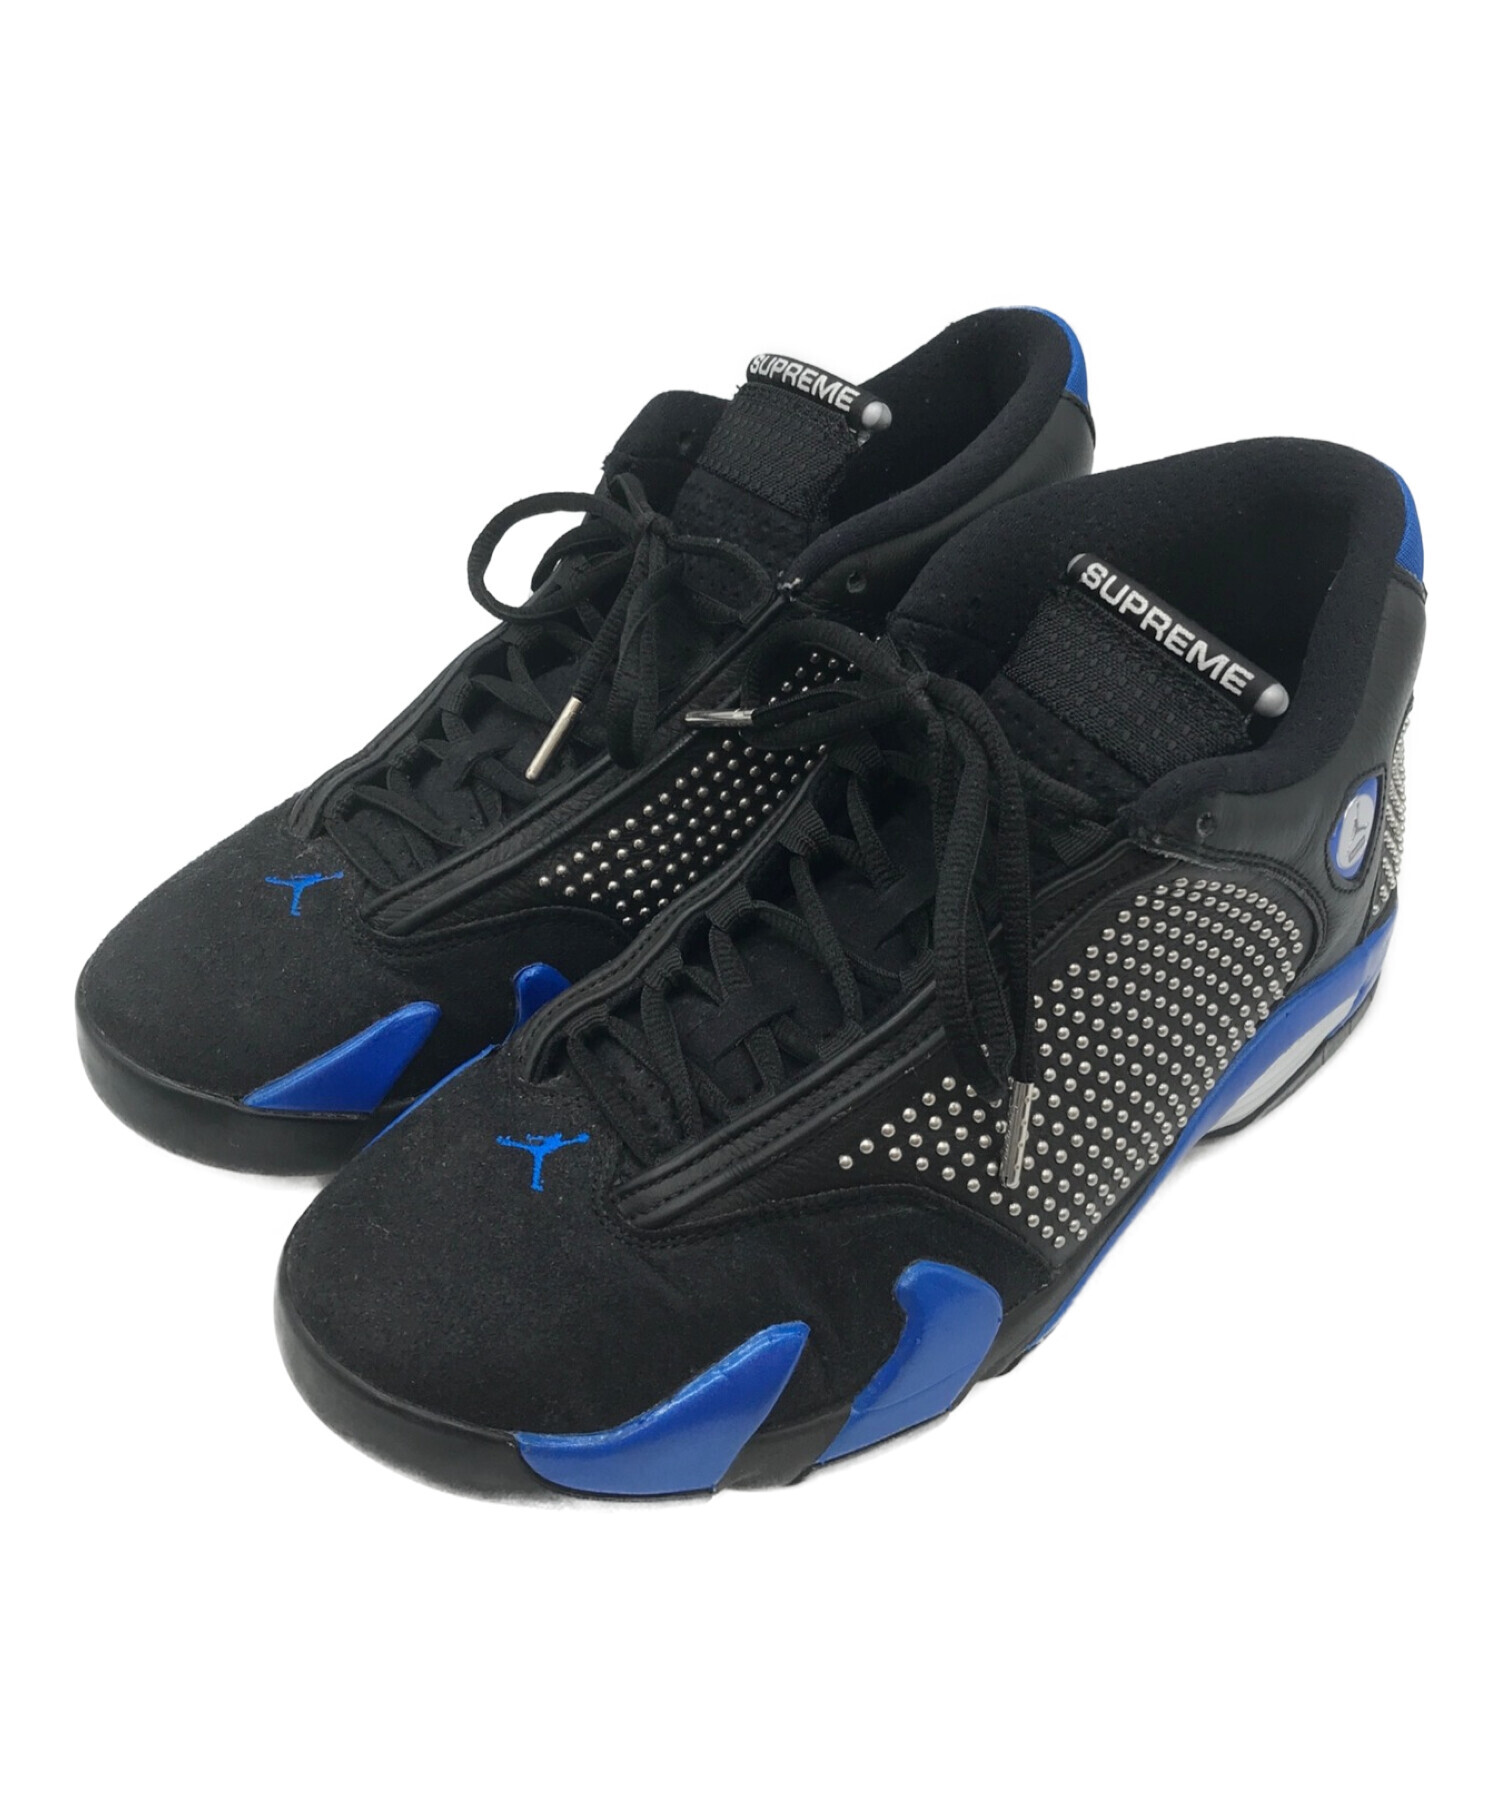 Supreme®/Nike® Air Jordan 14　US10　28cm